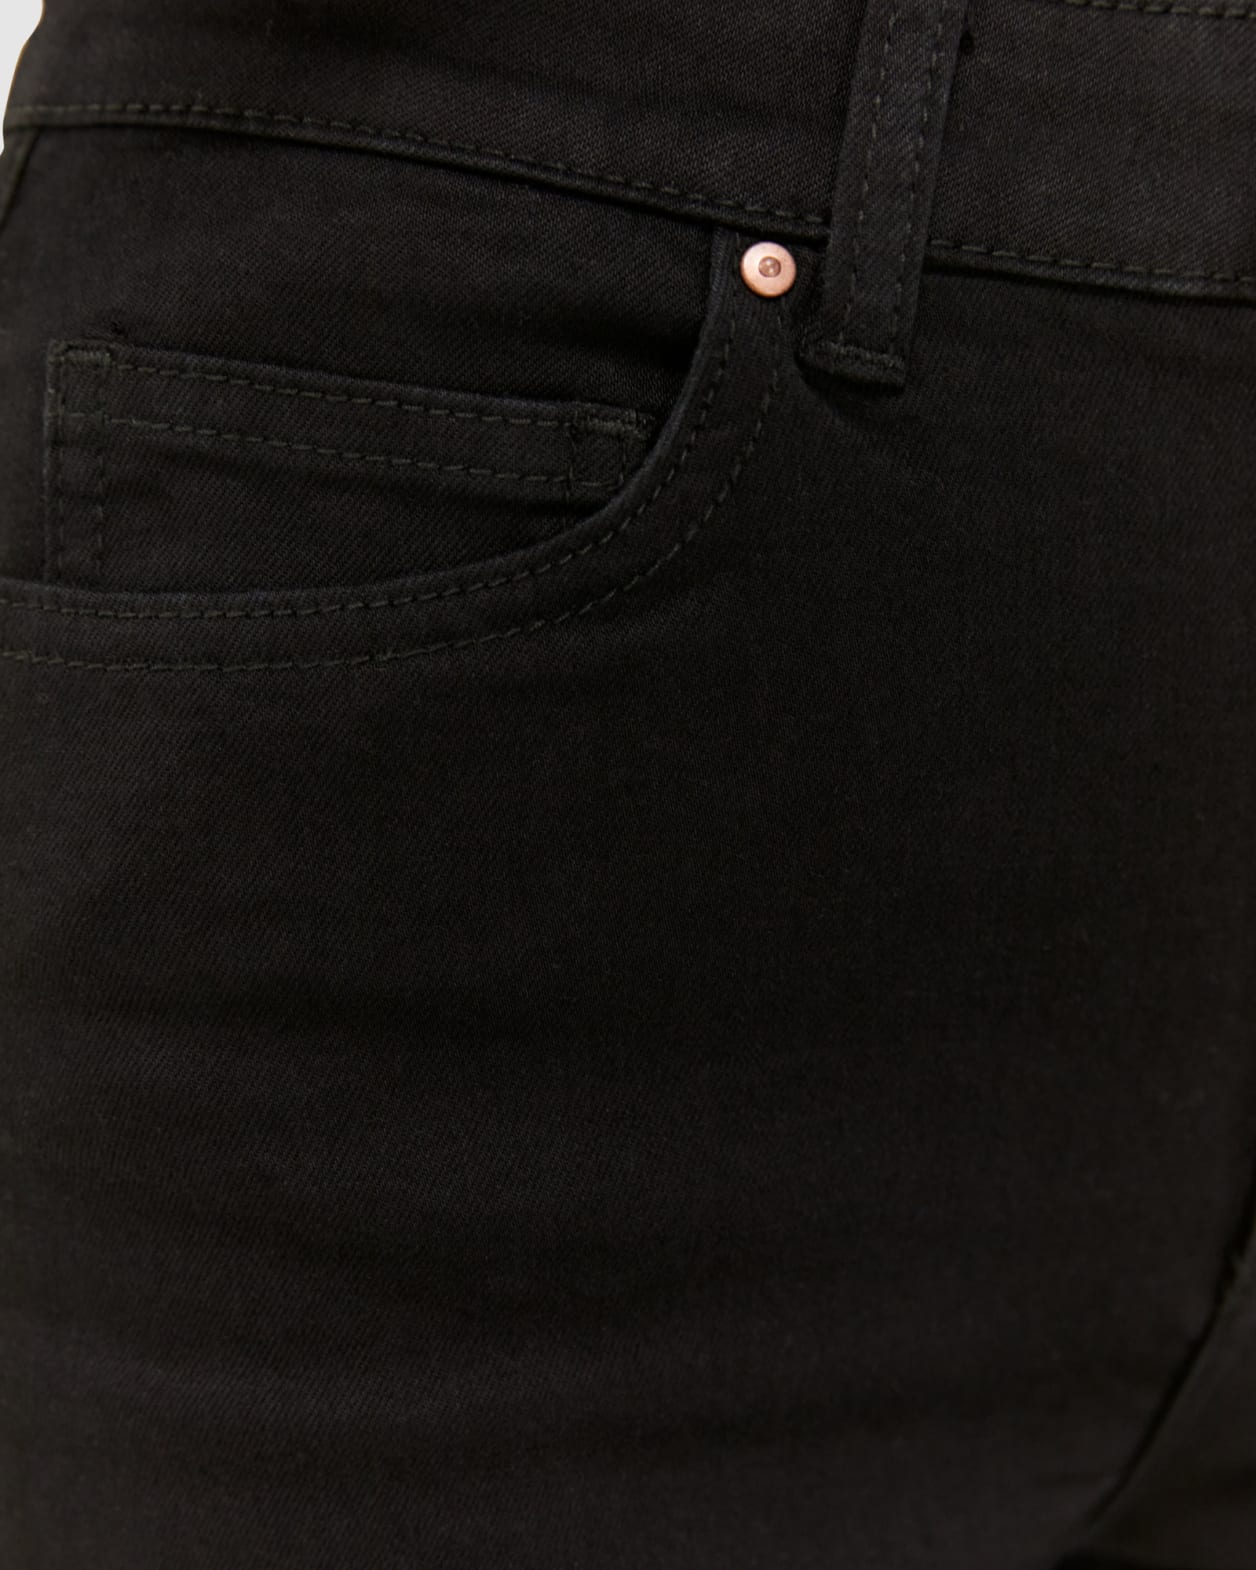 Gisele Kickflare Jean in BLACK